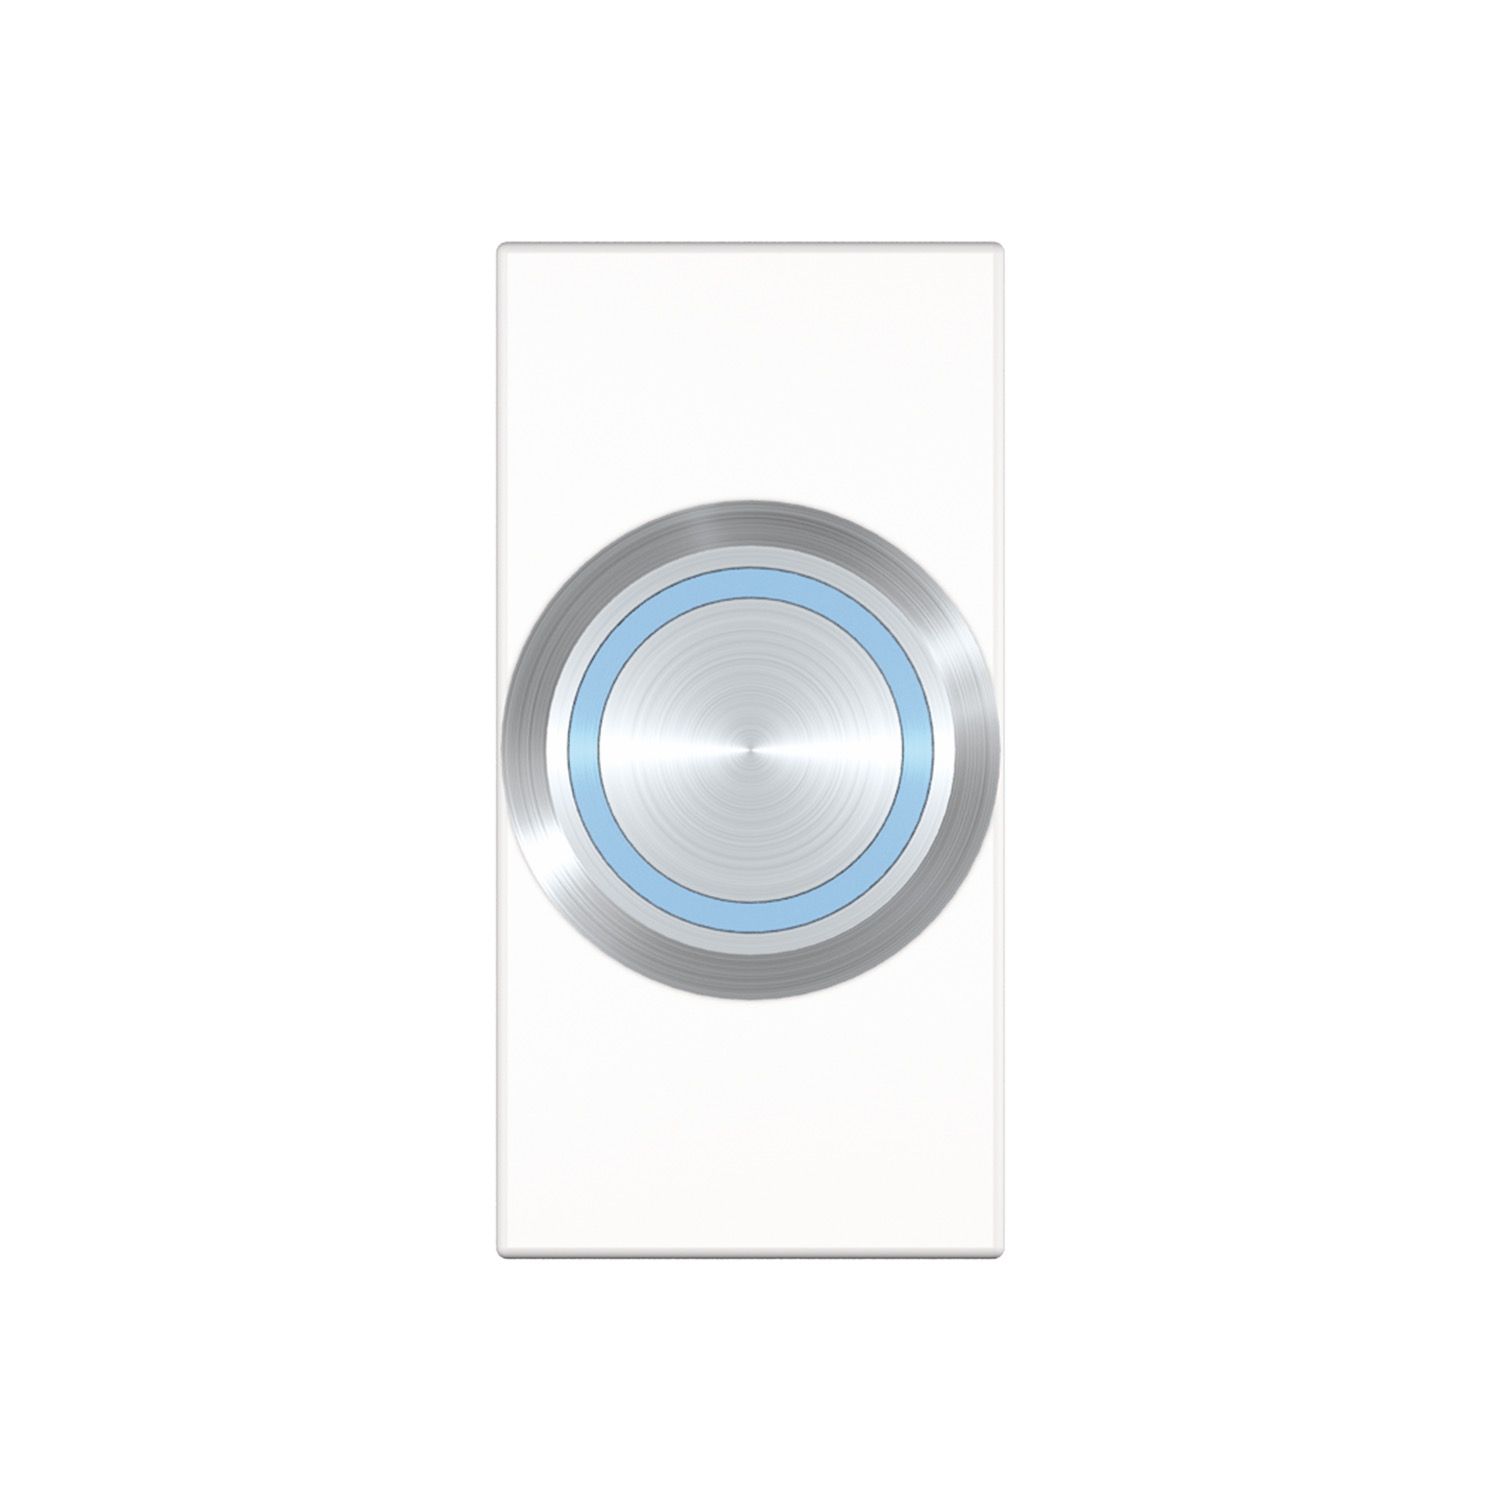 Kindermann Konnect flex 45 click Anschlussblende mit Push Taster 5 V - LED - Halbblende - Weiß